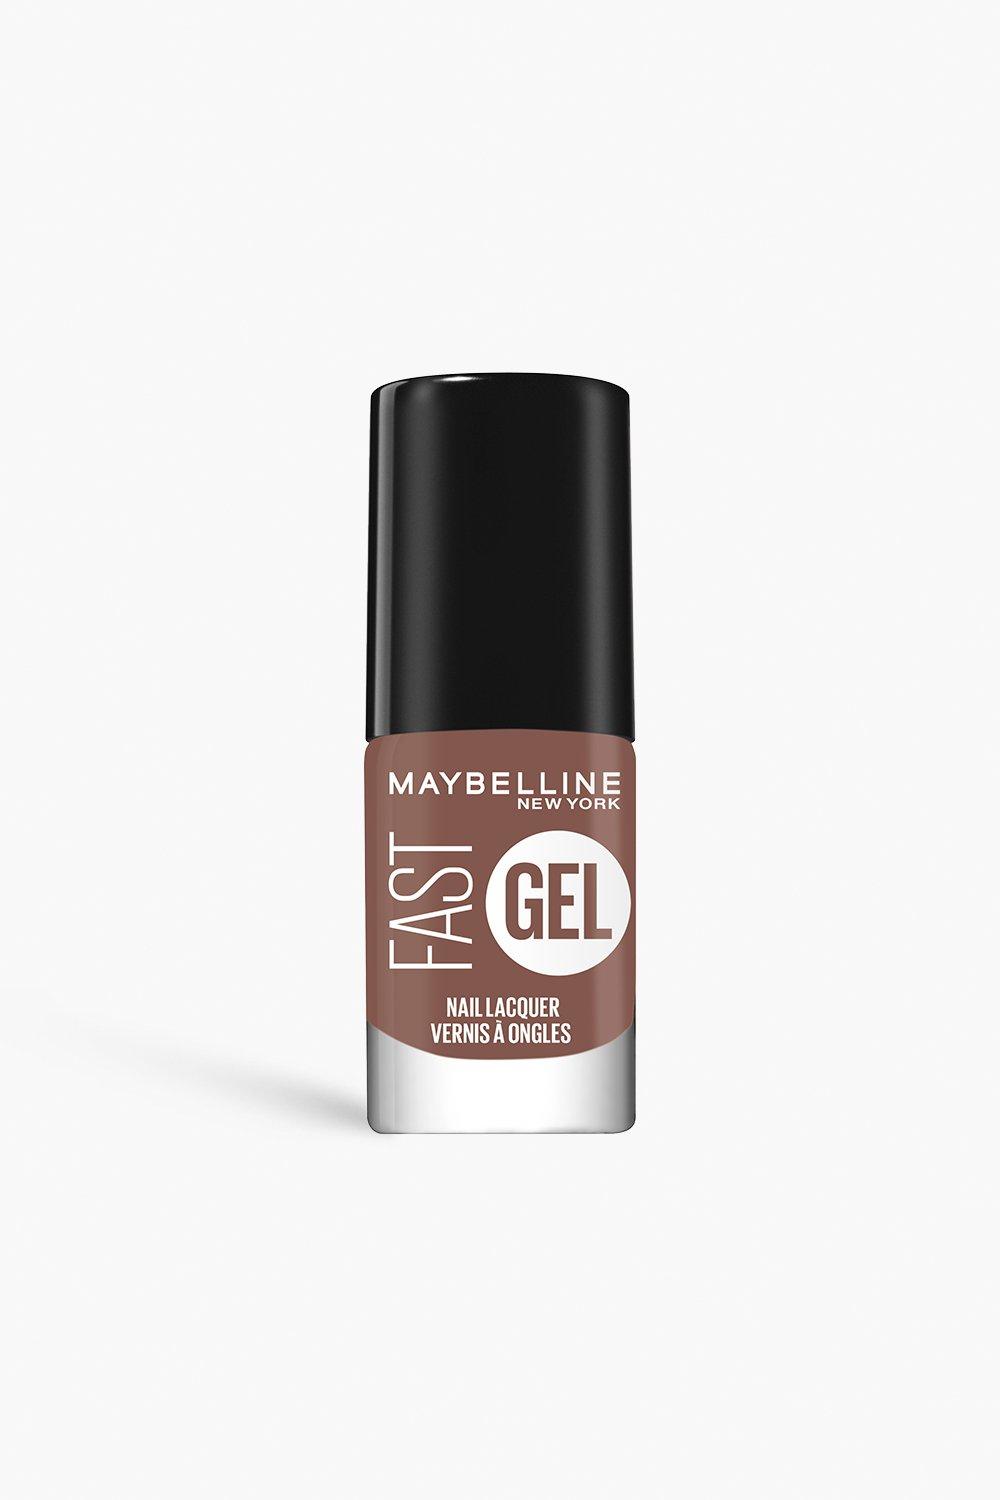 Maybelline Fast Gel Nail Lacquer Long-Lasting Nail Polish, Caramel